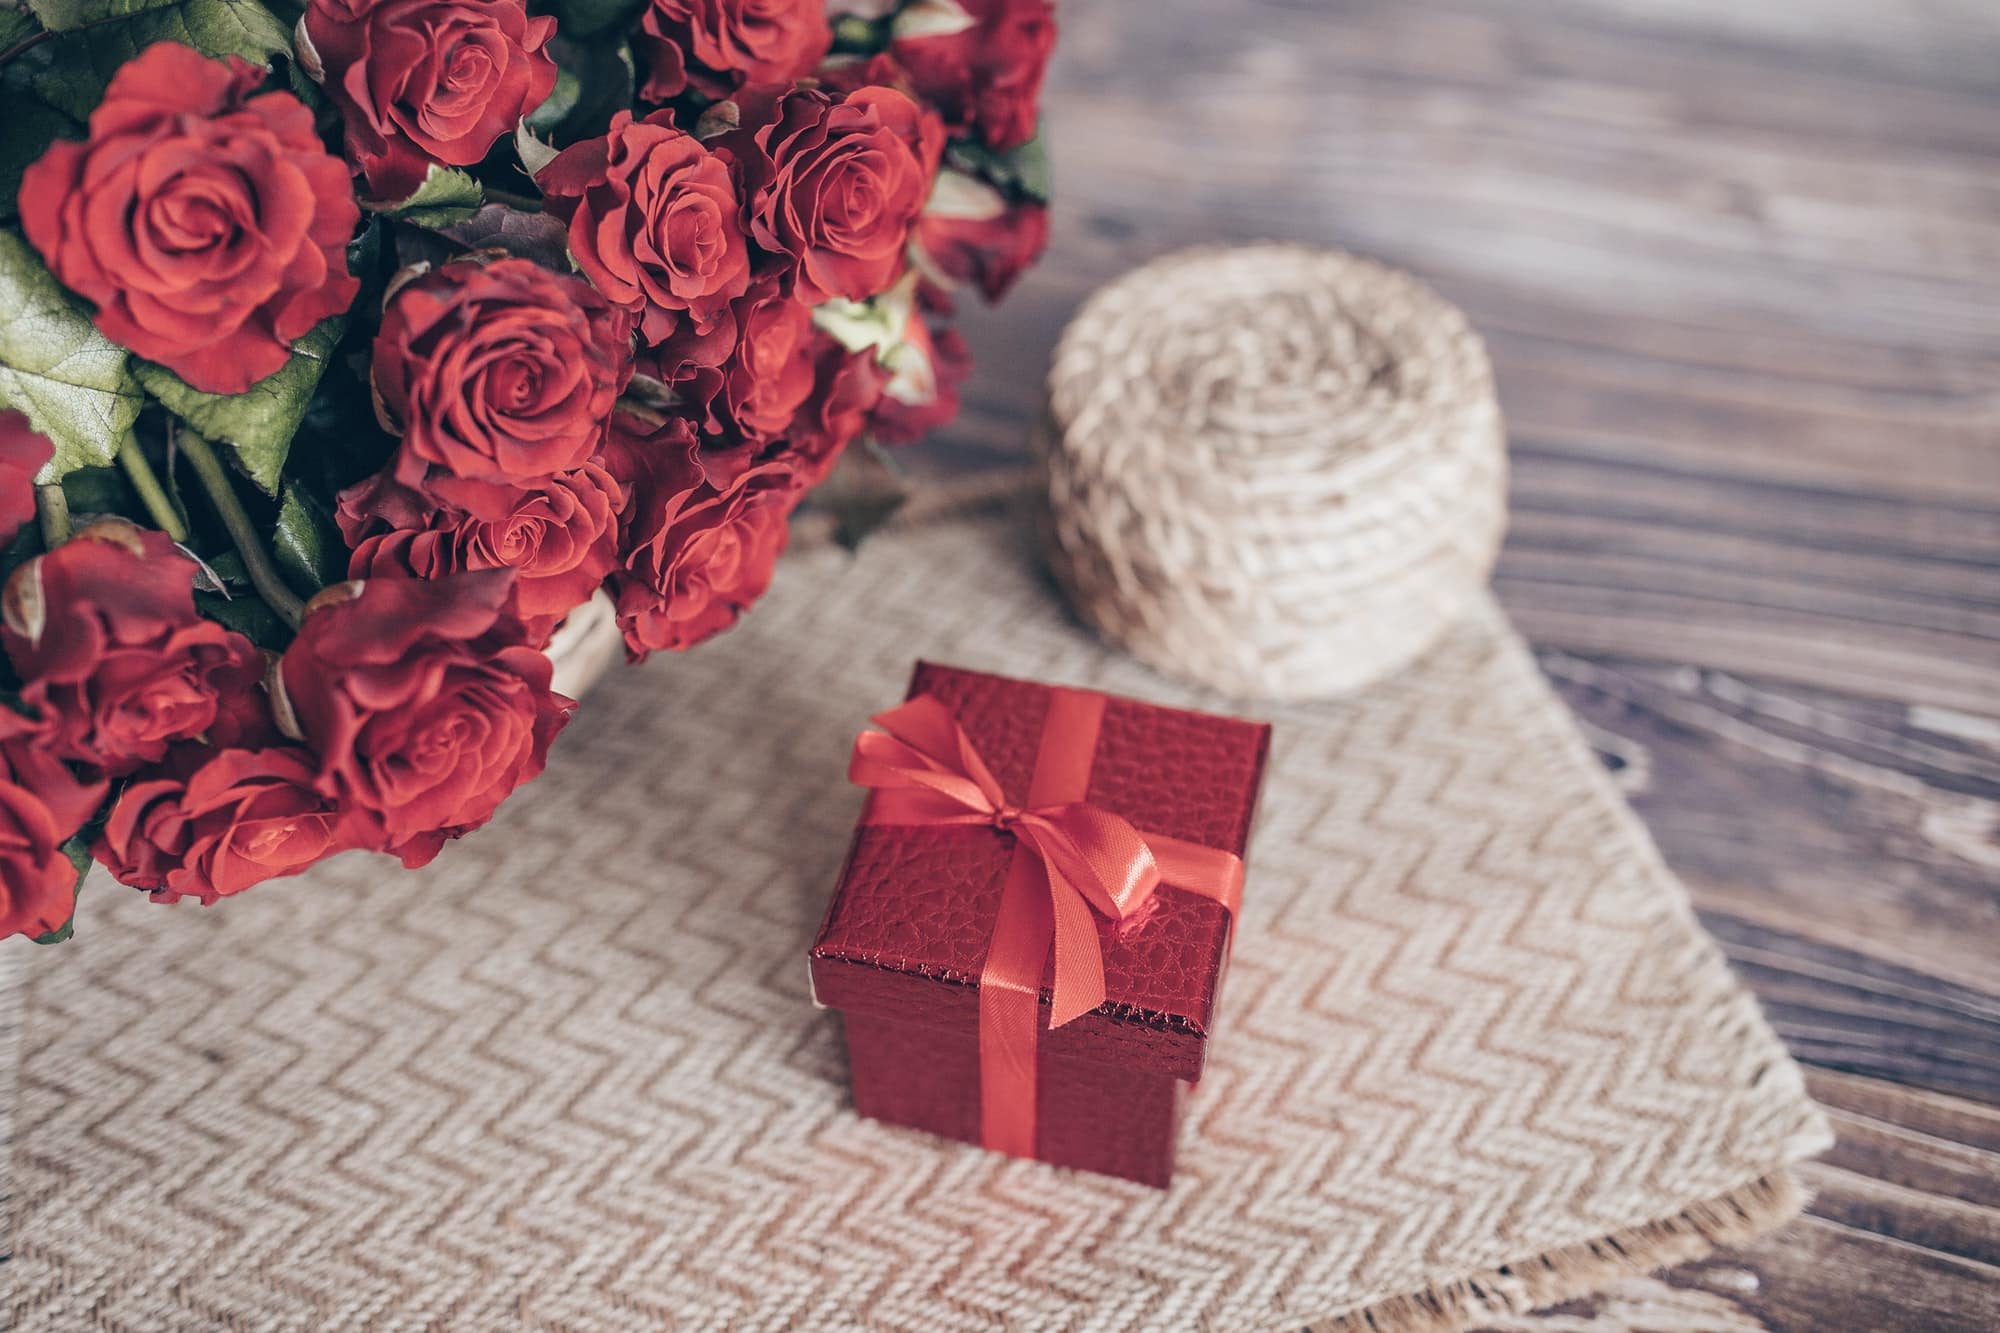 Comment choisir les bonnes roses pour la Saint-Valentin ?